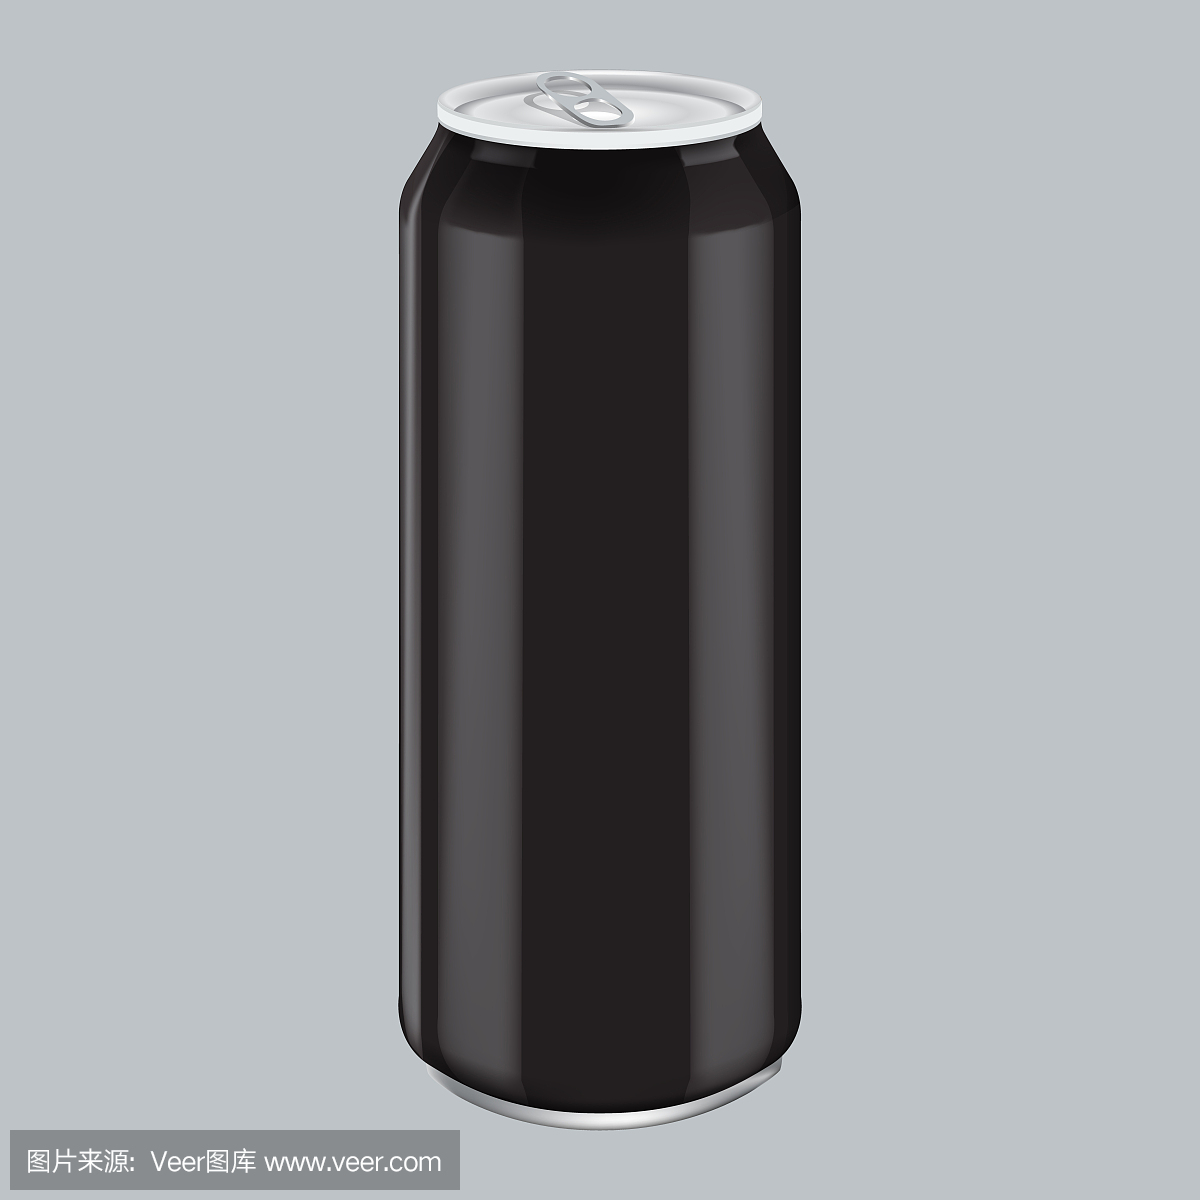 黑金属铝饮料饮料。产品包装模型。能量饮料罐500ml, 0.5 l